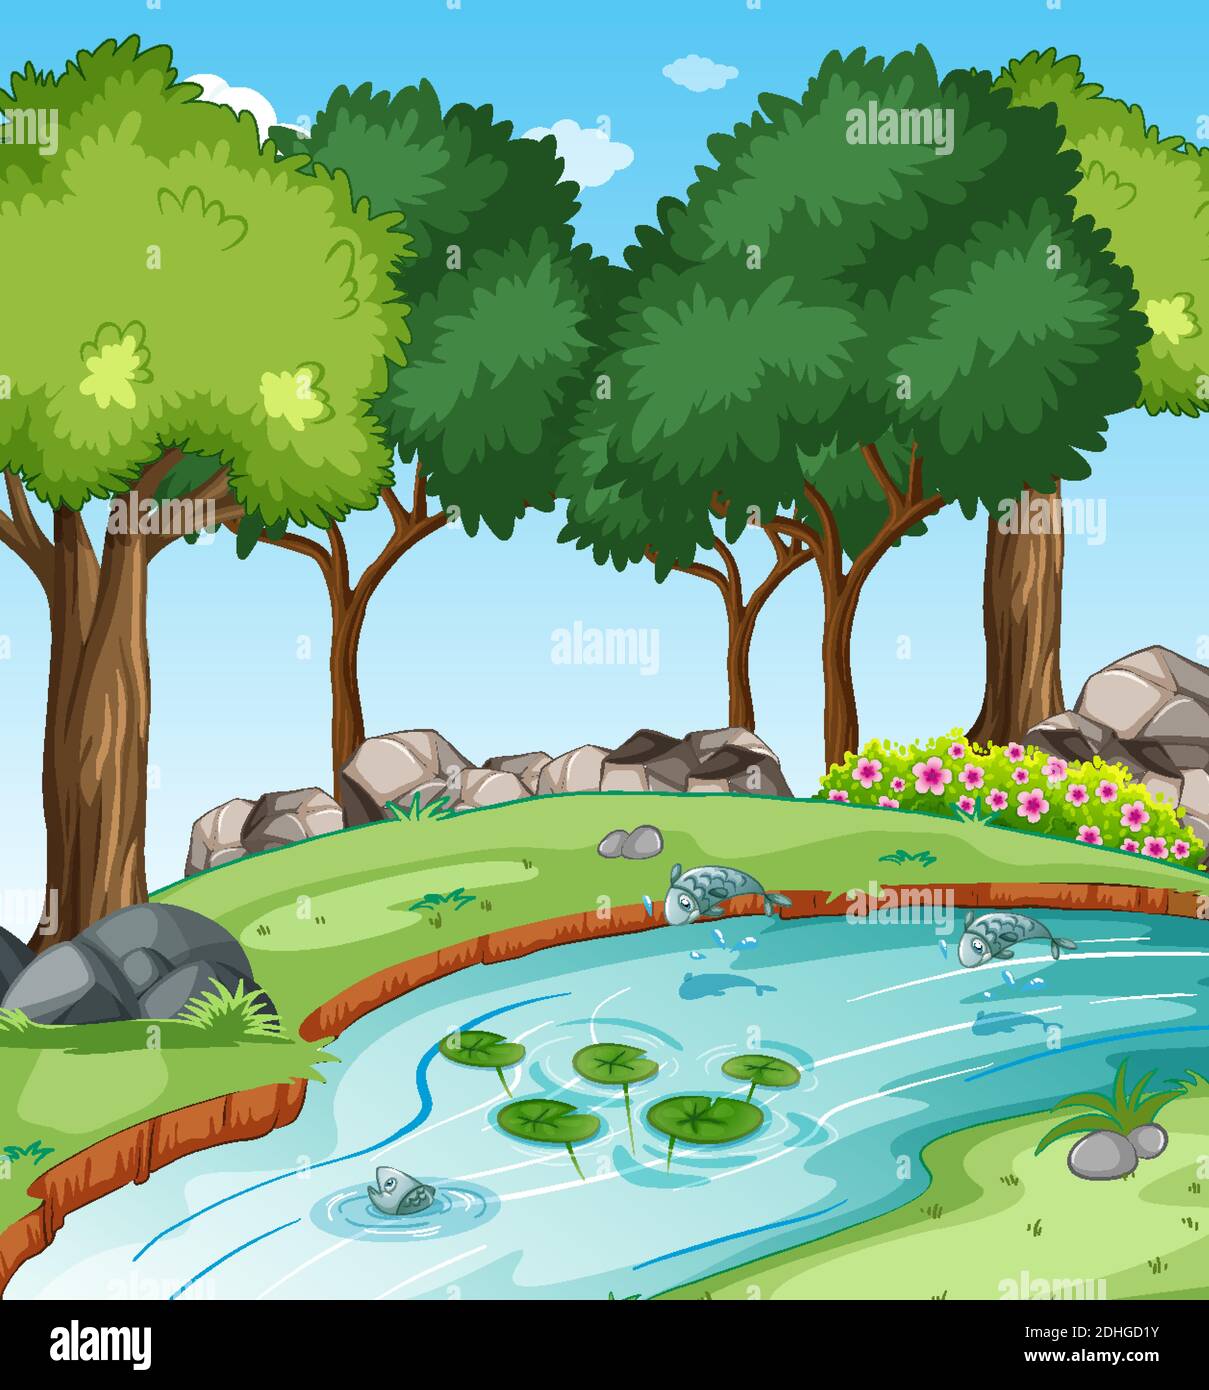 Ruisseau dans la scène de la forêt avec quelques illustrations de poissons Illustration de Vecteur